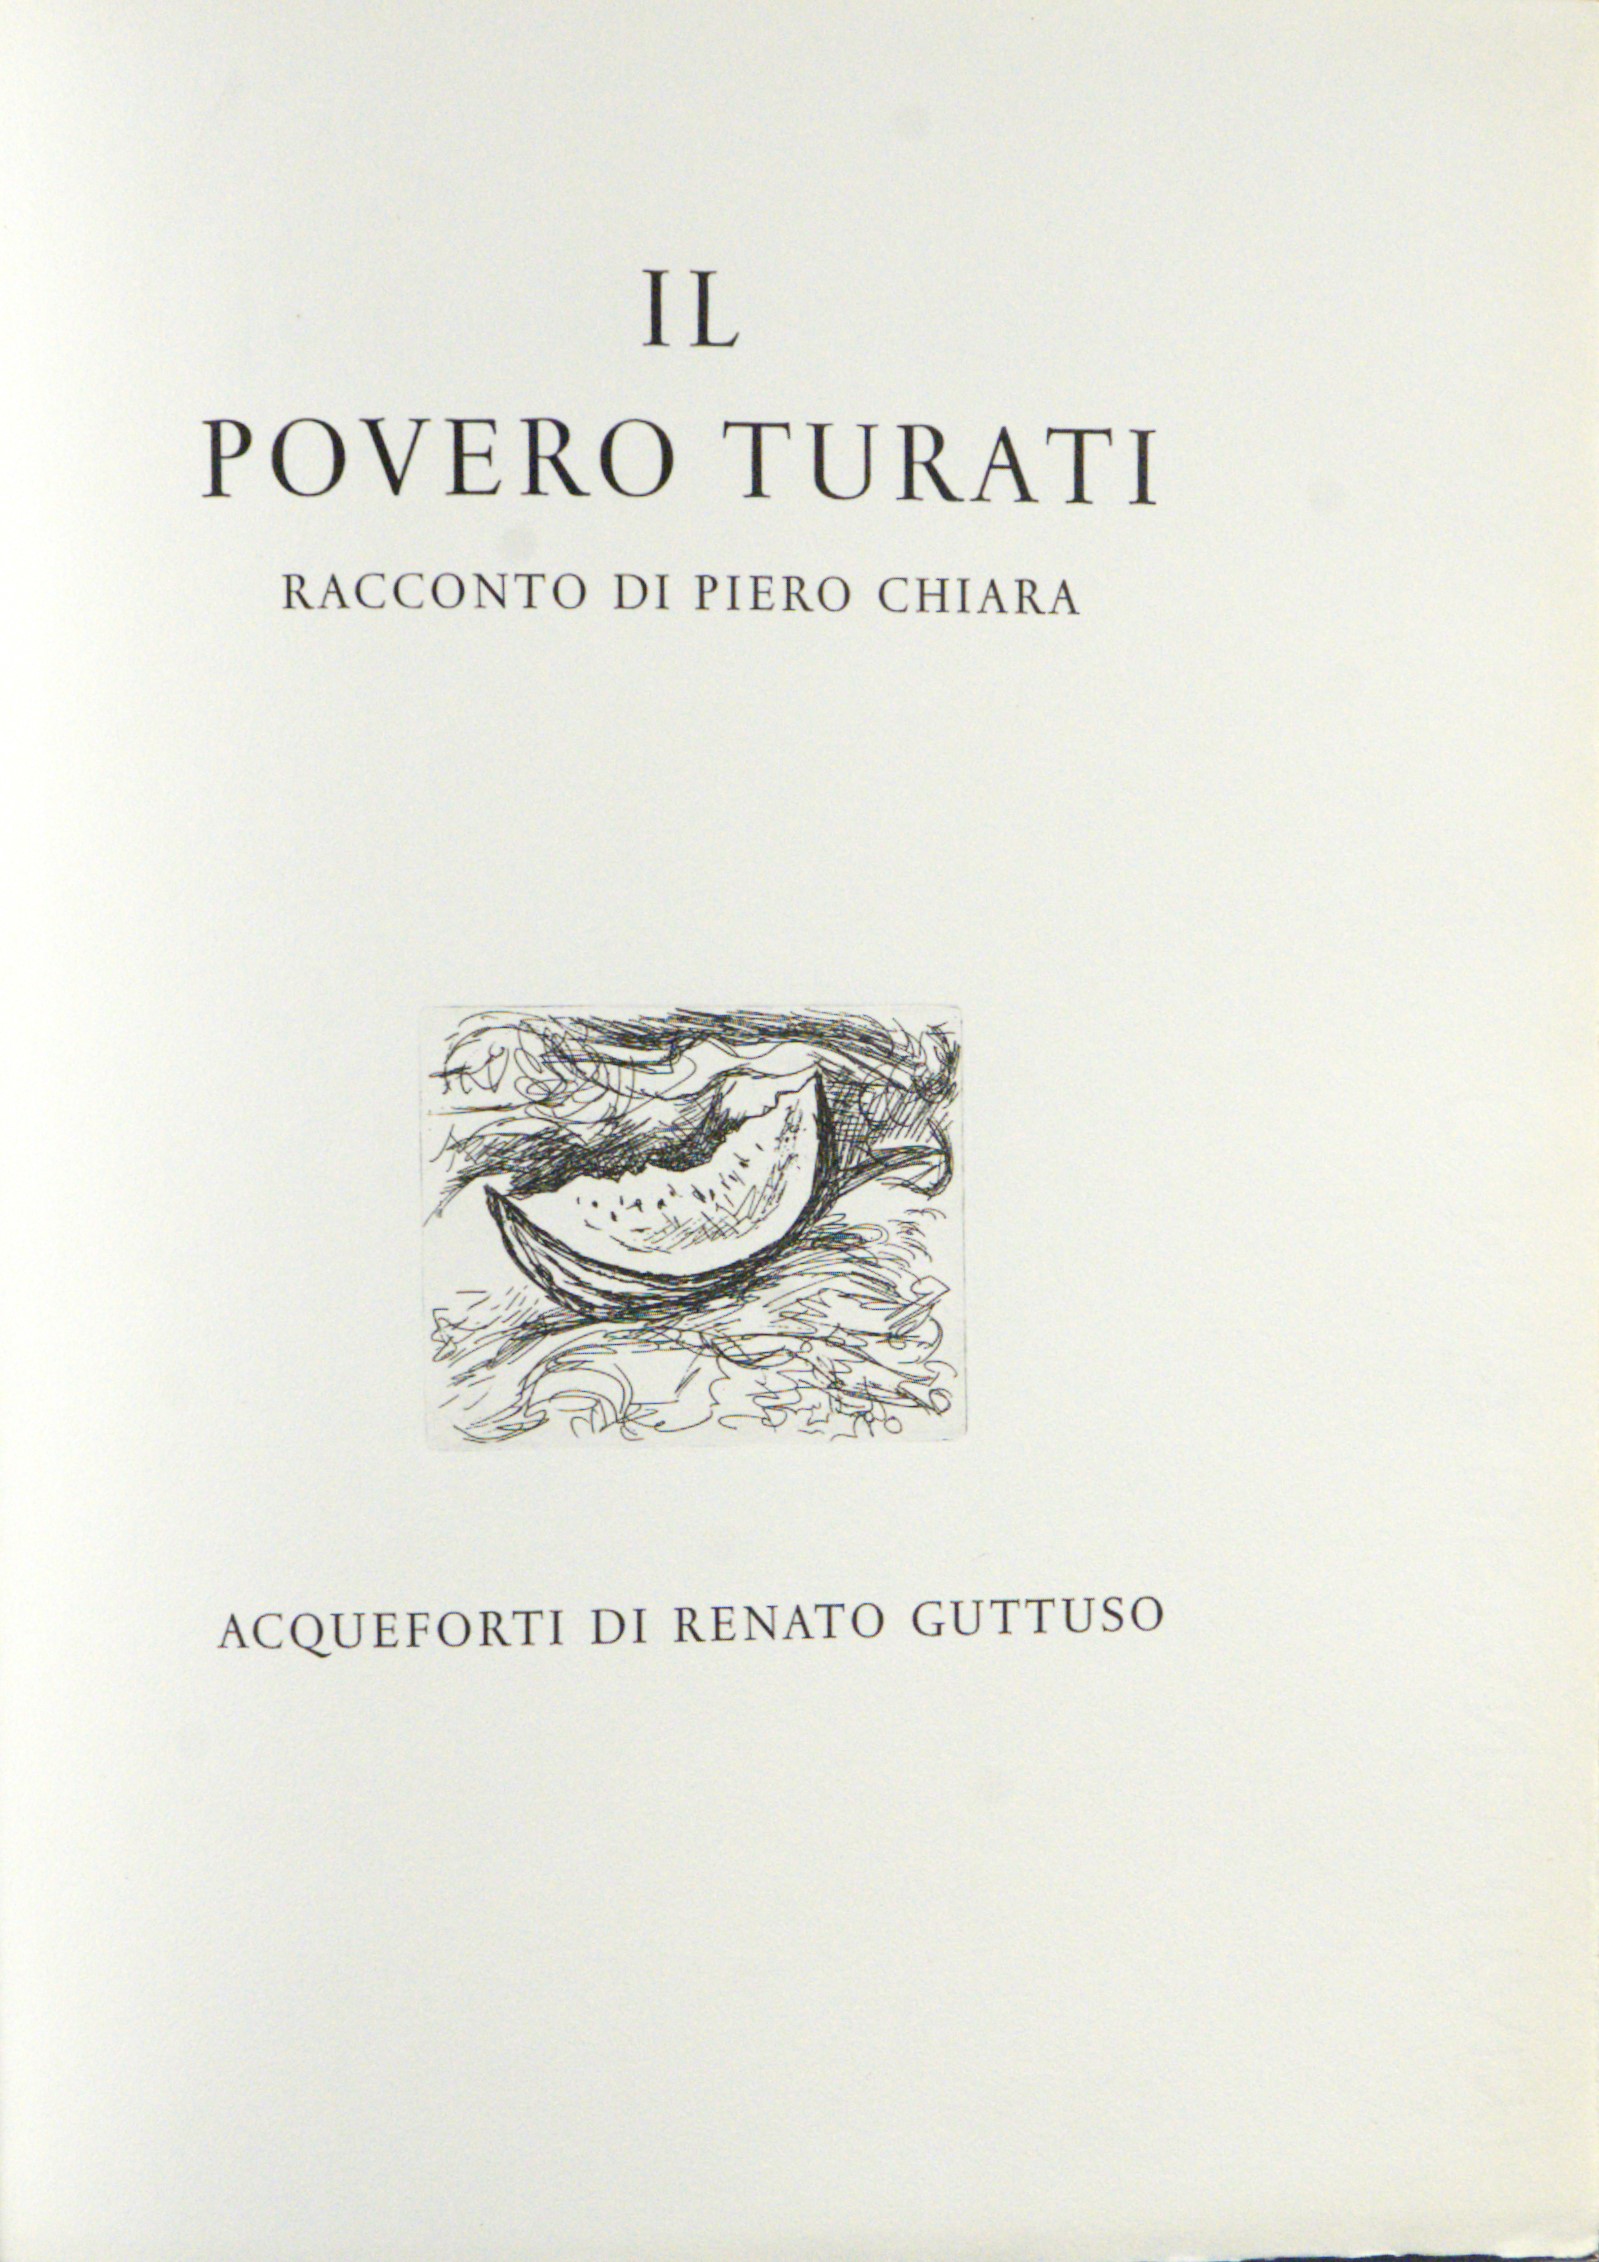 Guttuso Aldo Renato - Bagheria, 26/12/1911 - Roma, 18/01/1987